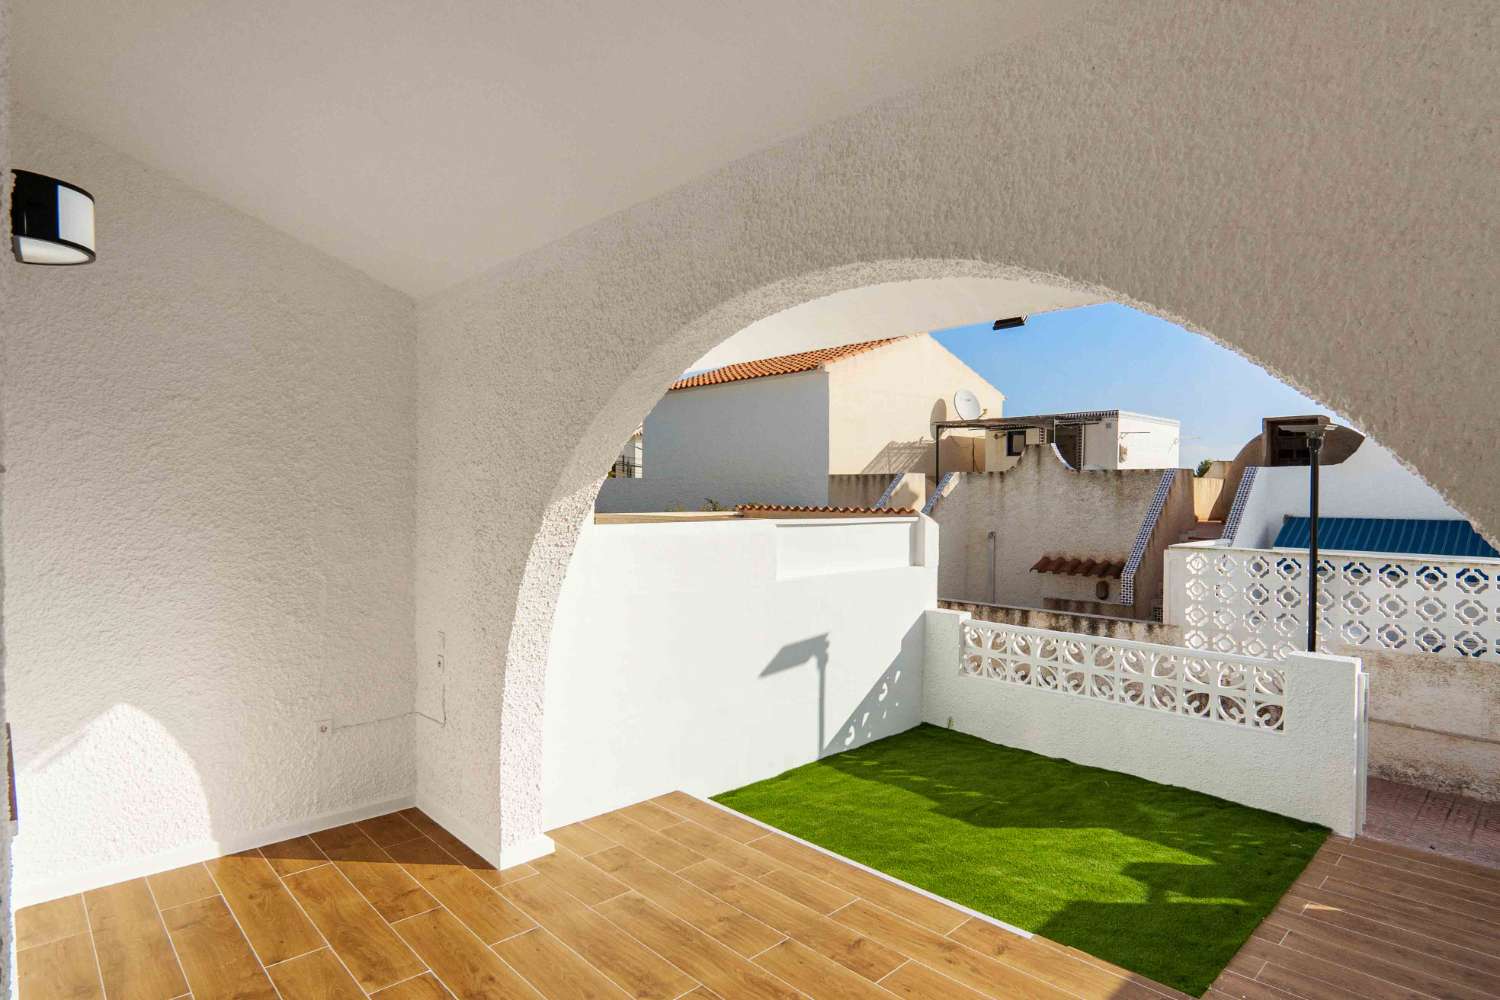 2 bedroom bungalow with garden in San Miguel de Salinas (Costa Blanca)